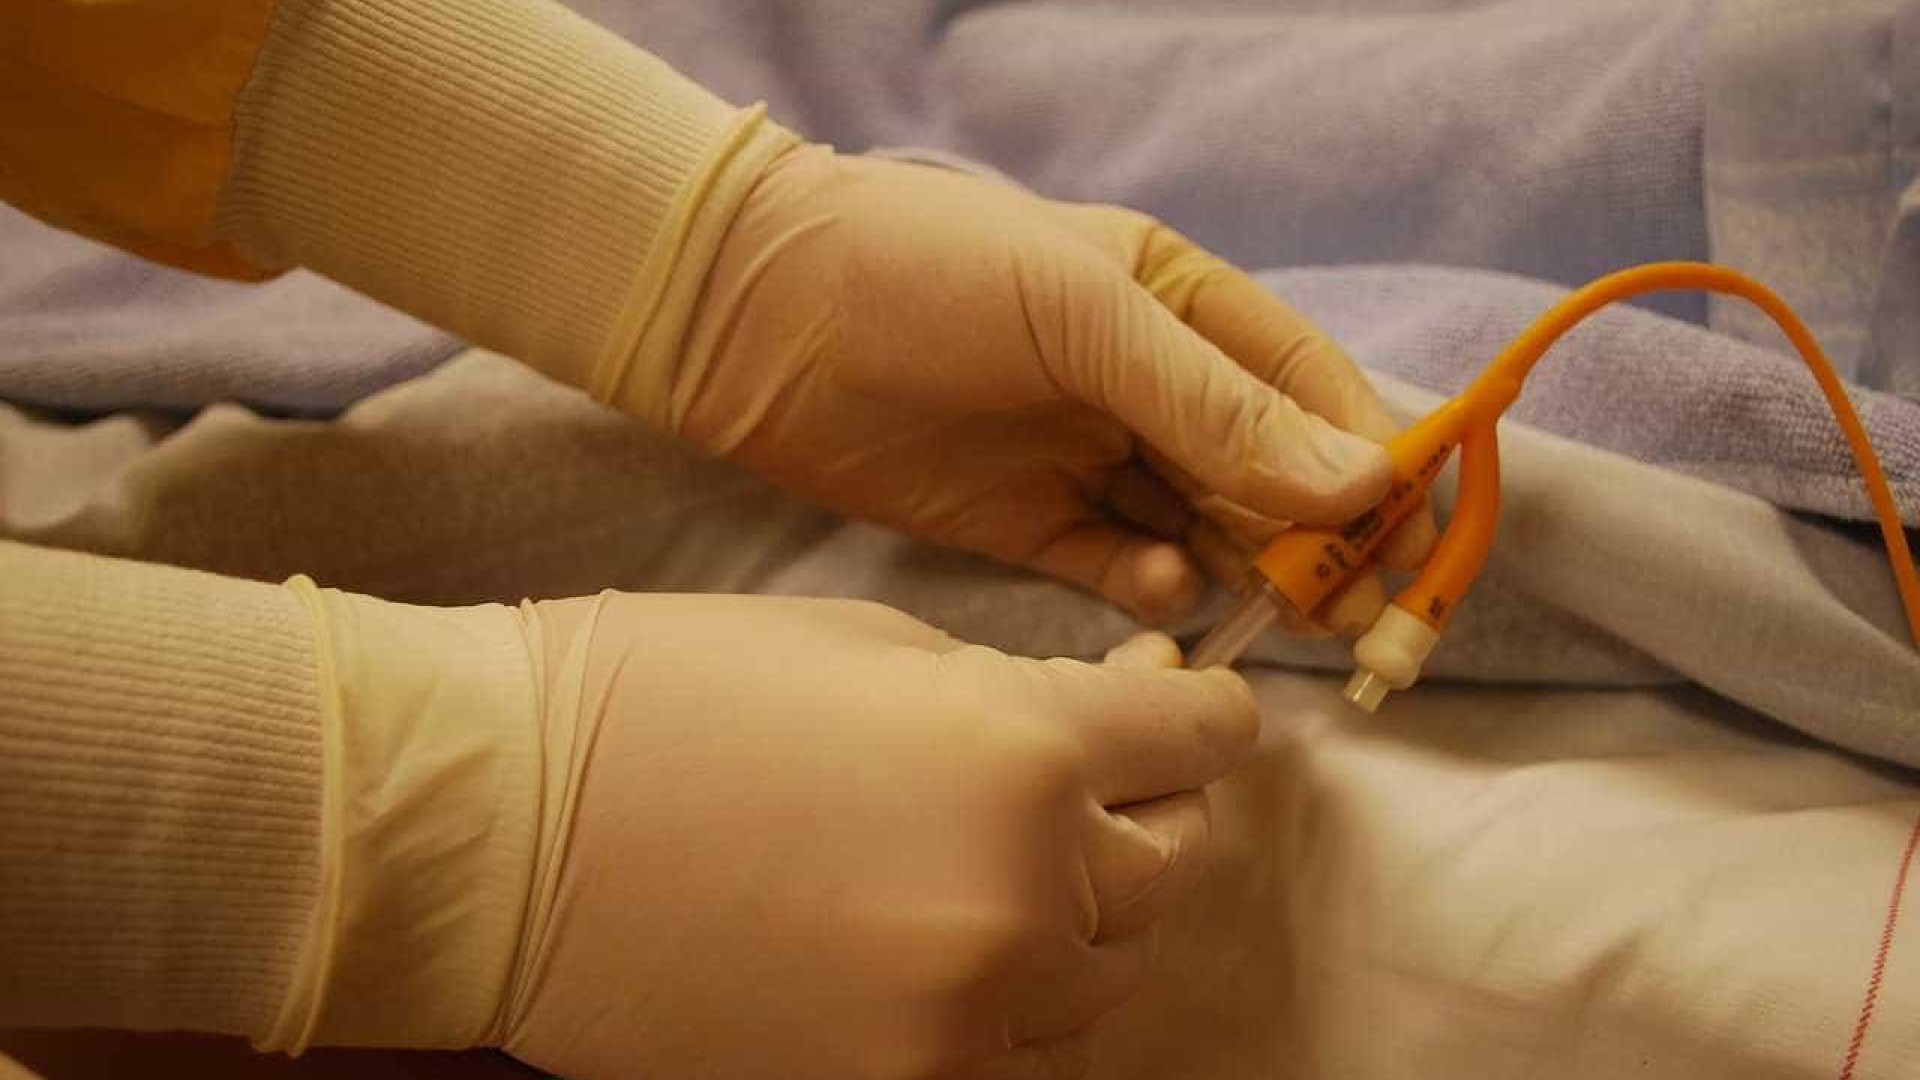 Paciente denuncia abuso sexual em hospital: 'Pegou nos meus seios'